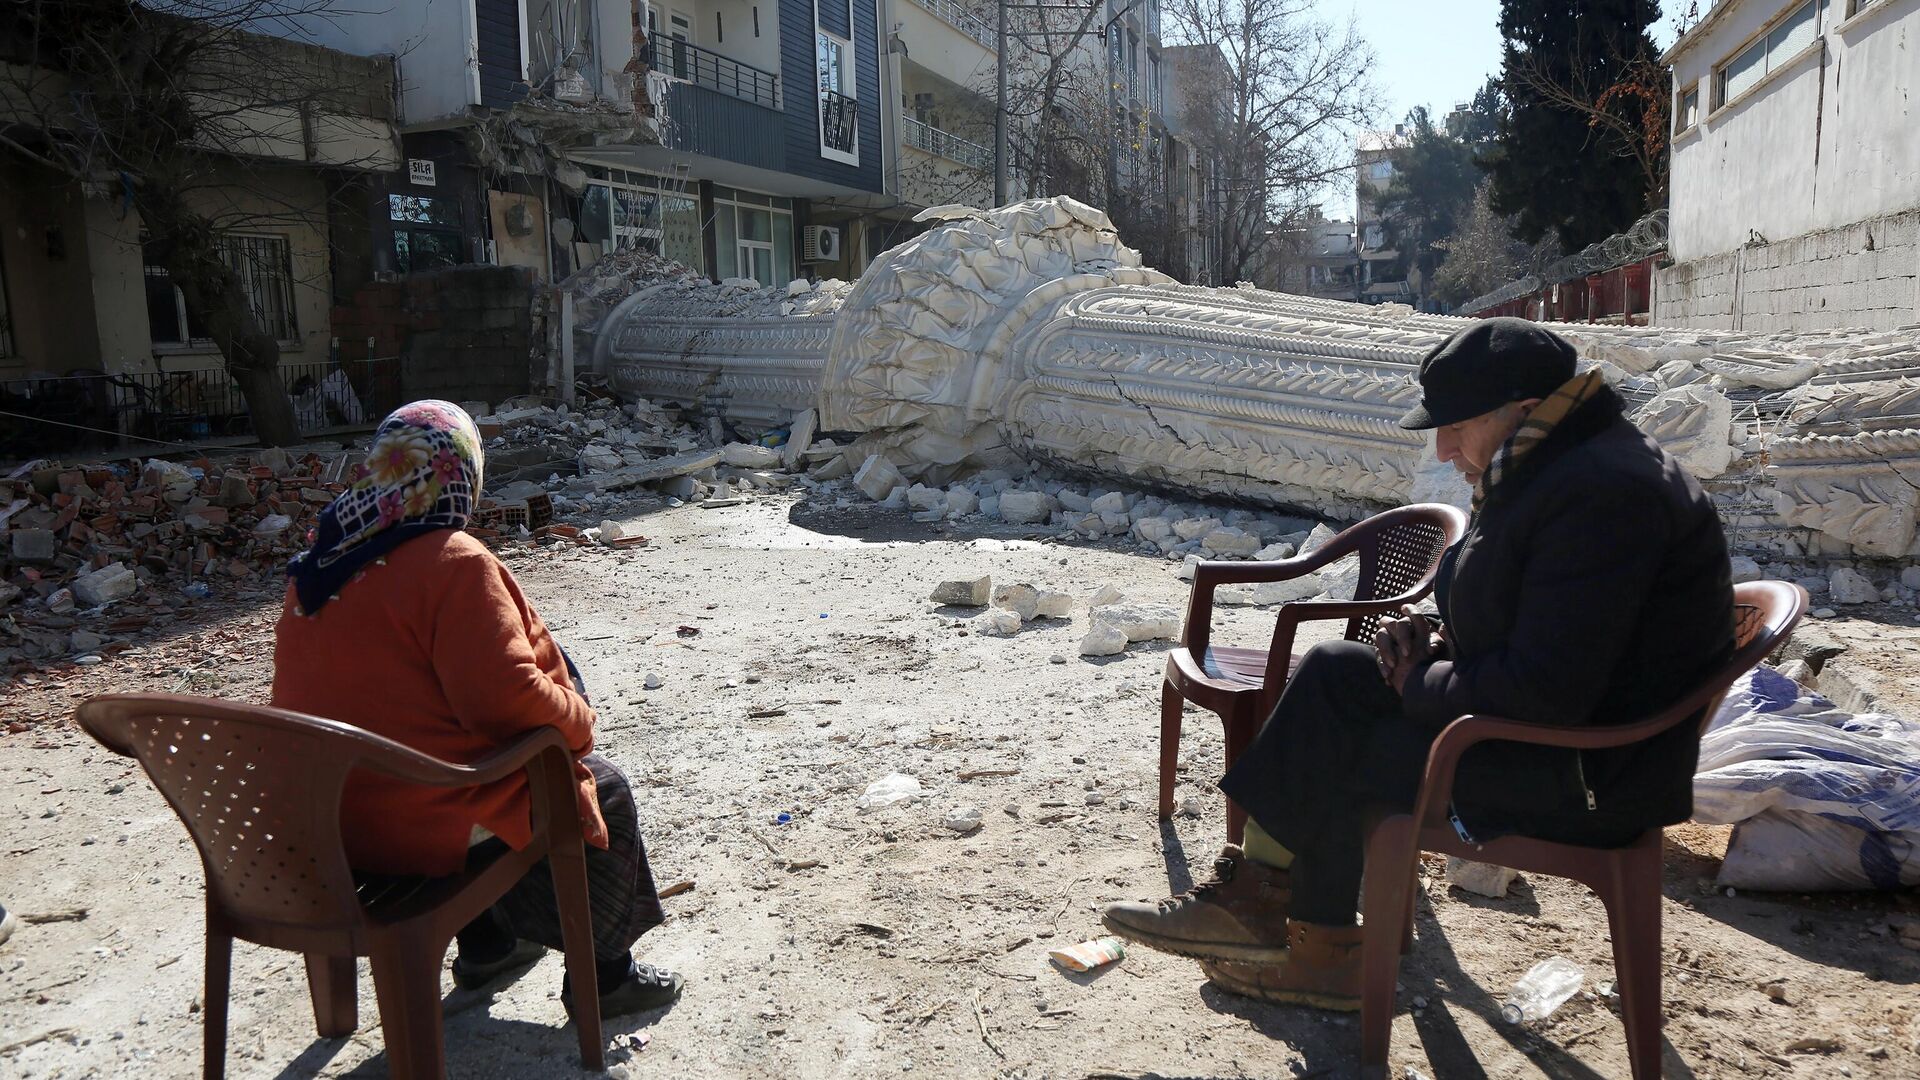 Жители на улице пострадавшего от землетрясения турецкого города Адыямана - РИА Новости, 1920, 21.02.2023